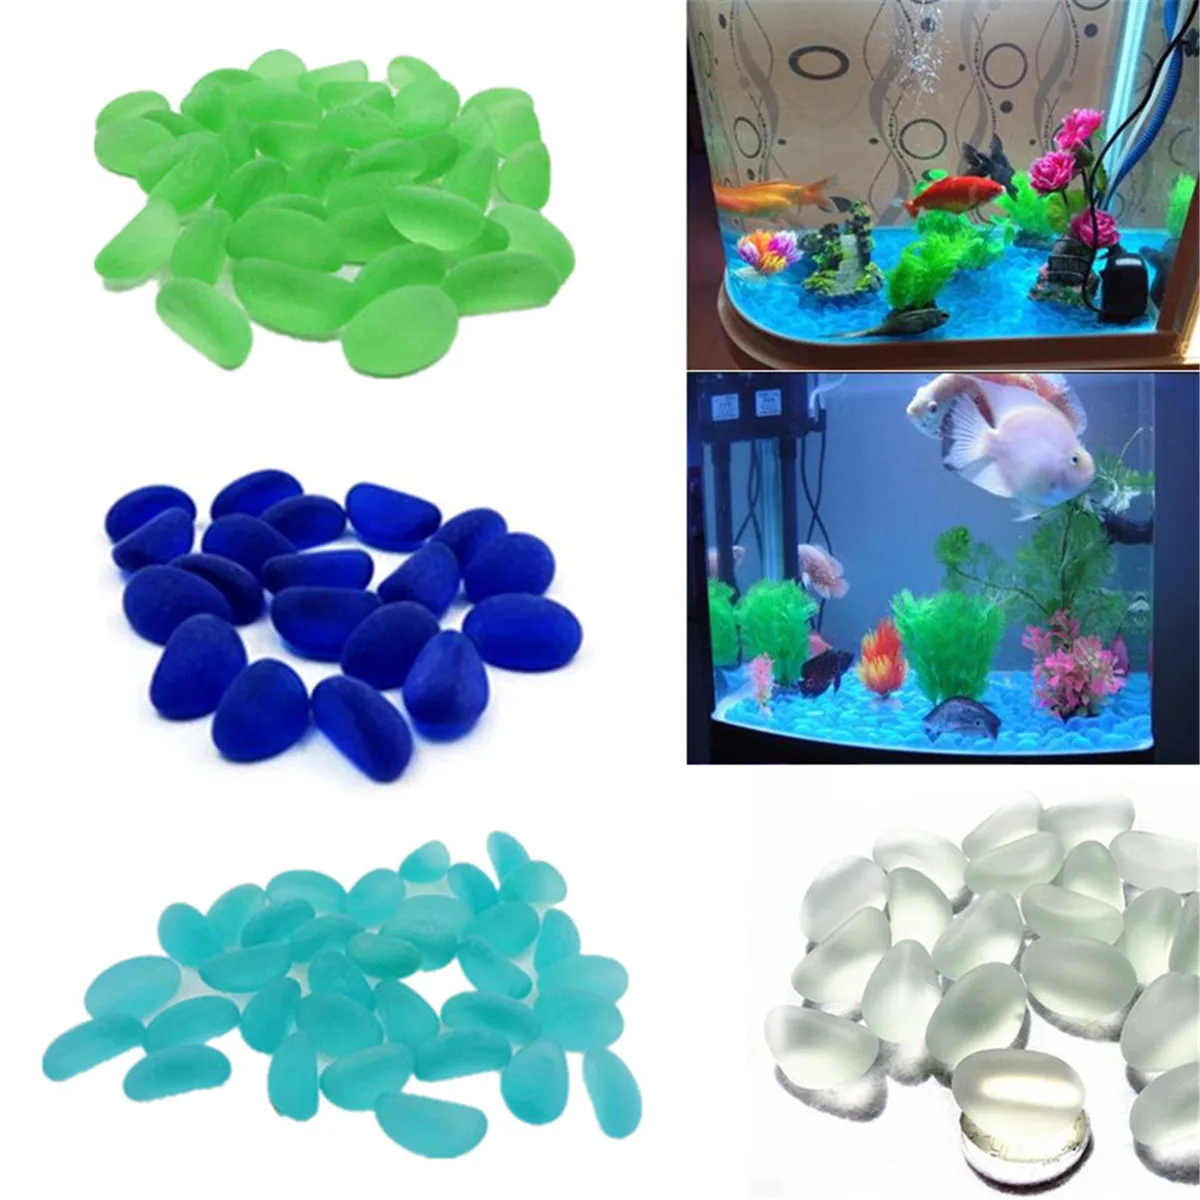 

100g Colorful Round Pebbles Beads Stones Grind Nugget Fish Tank Aquarium Decor